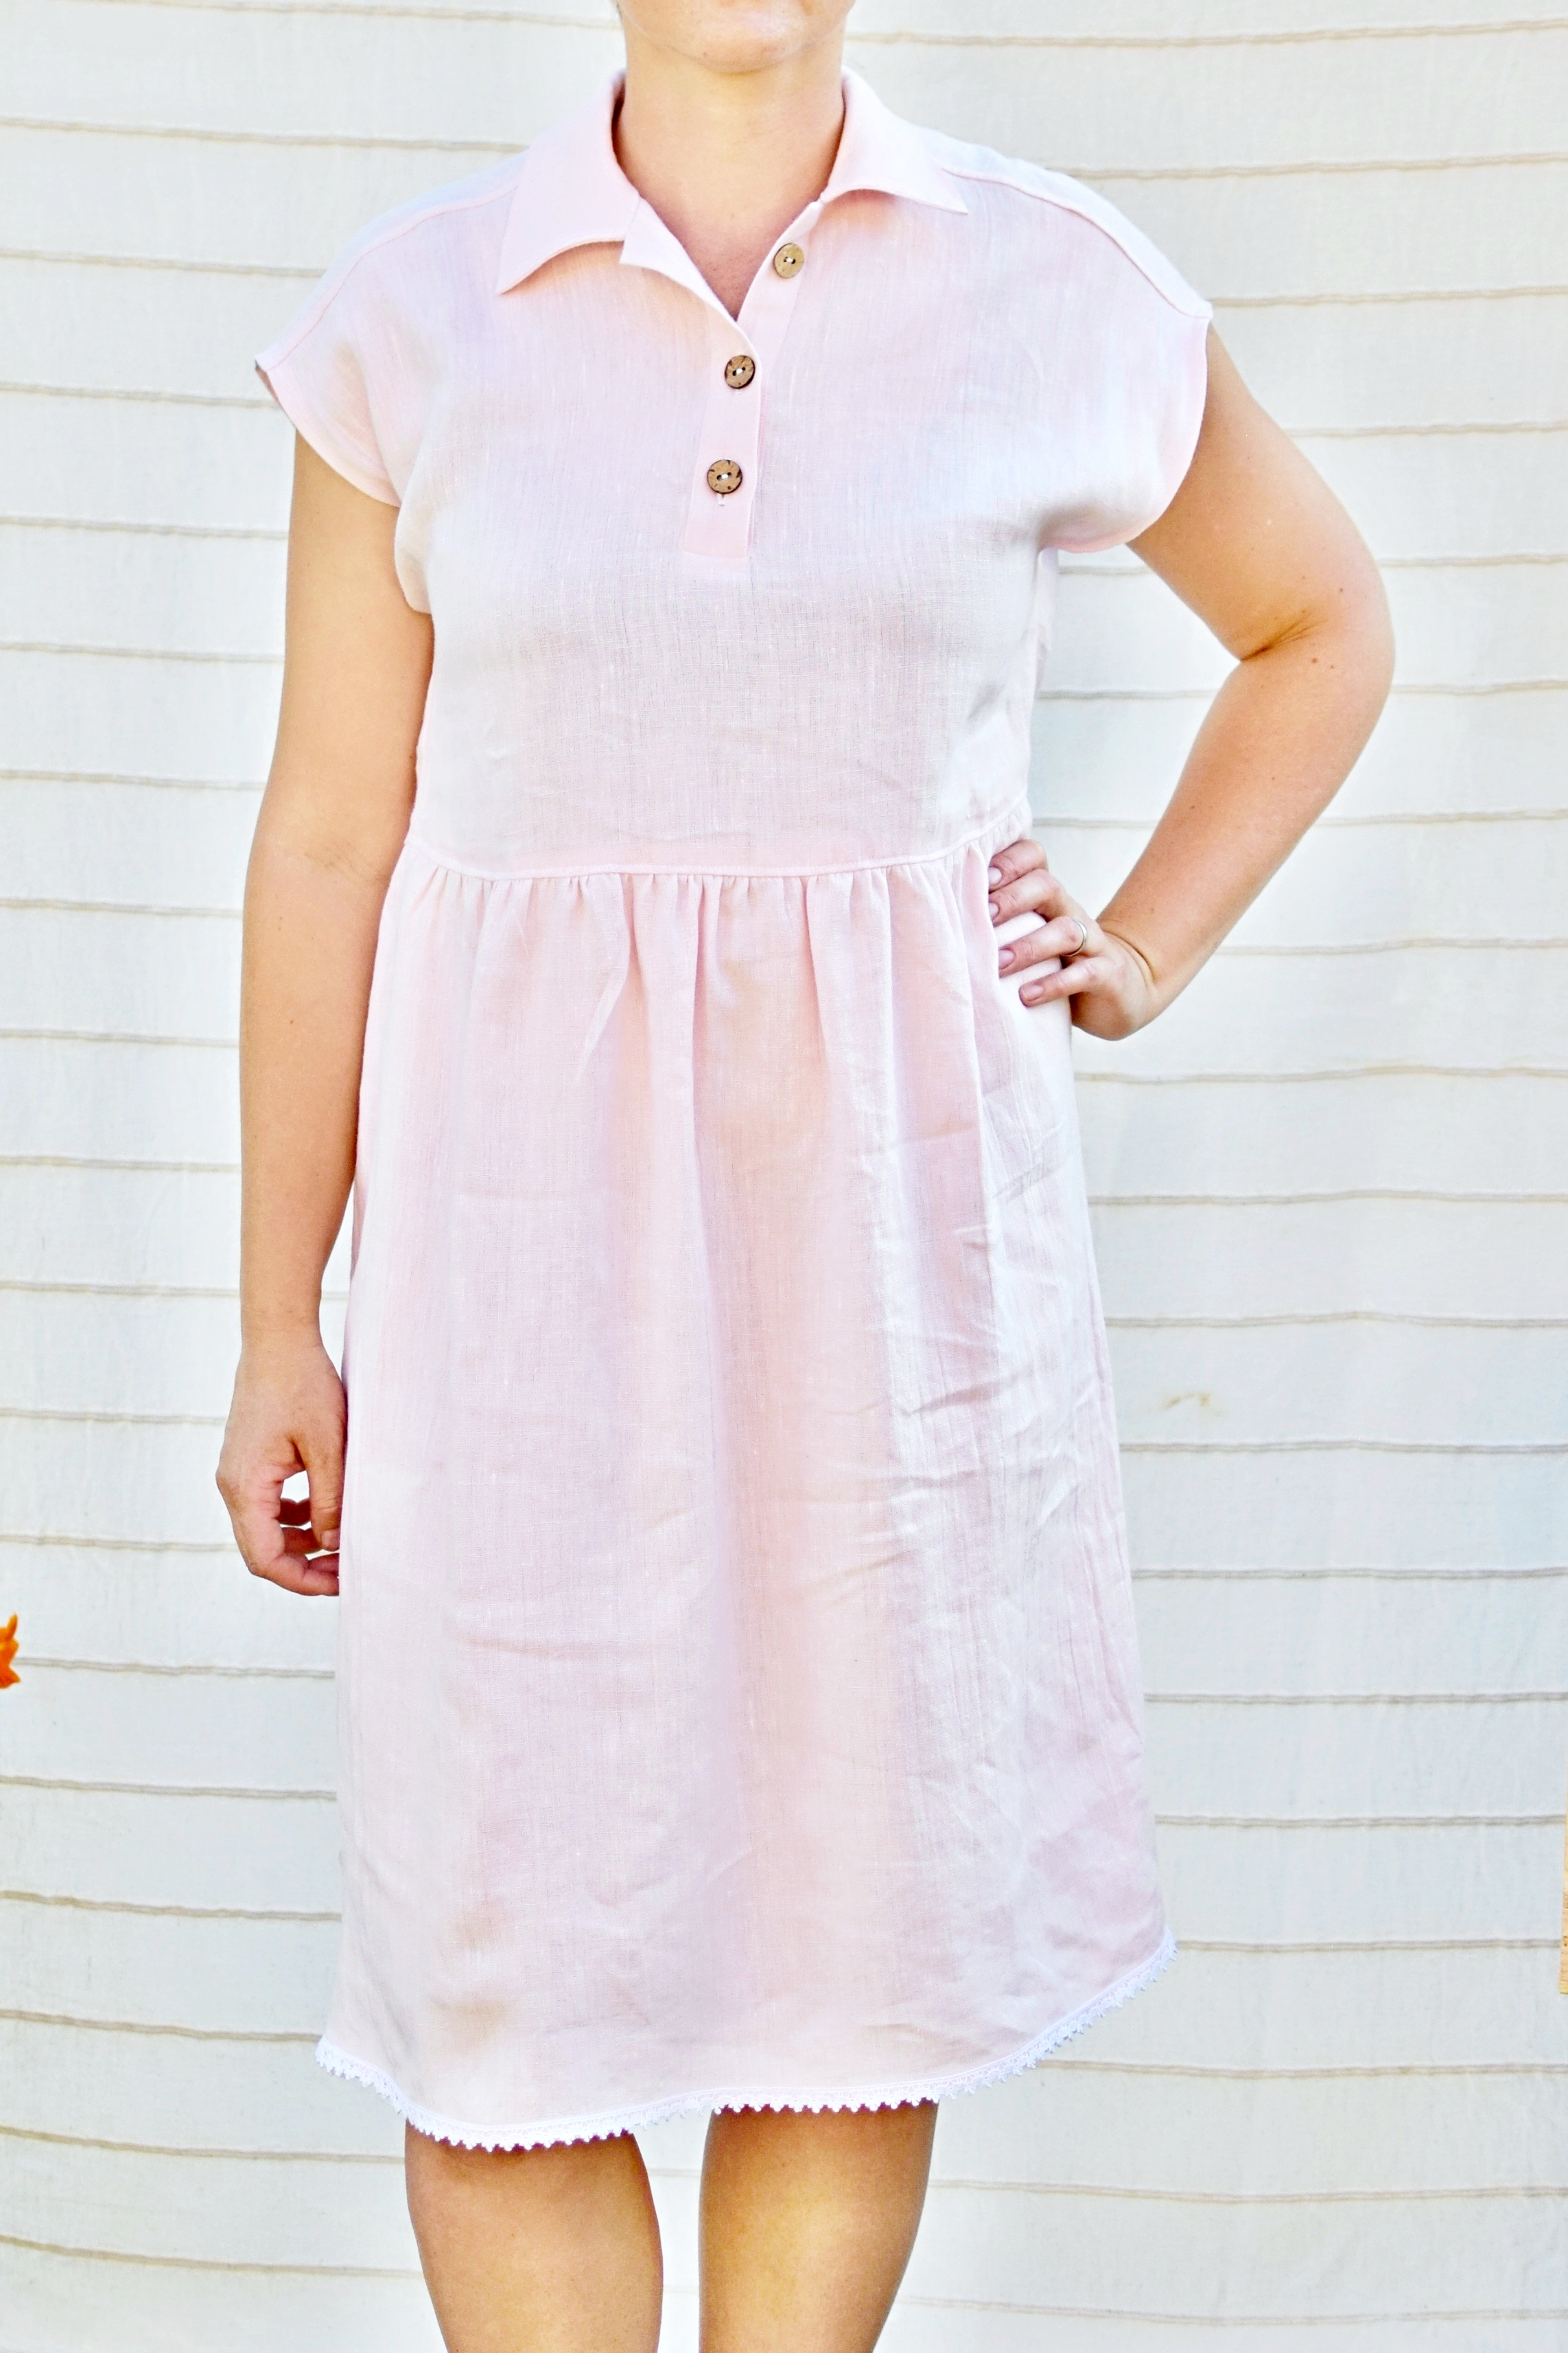 Lněná šaty GLAMI růžové vel. 42